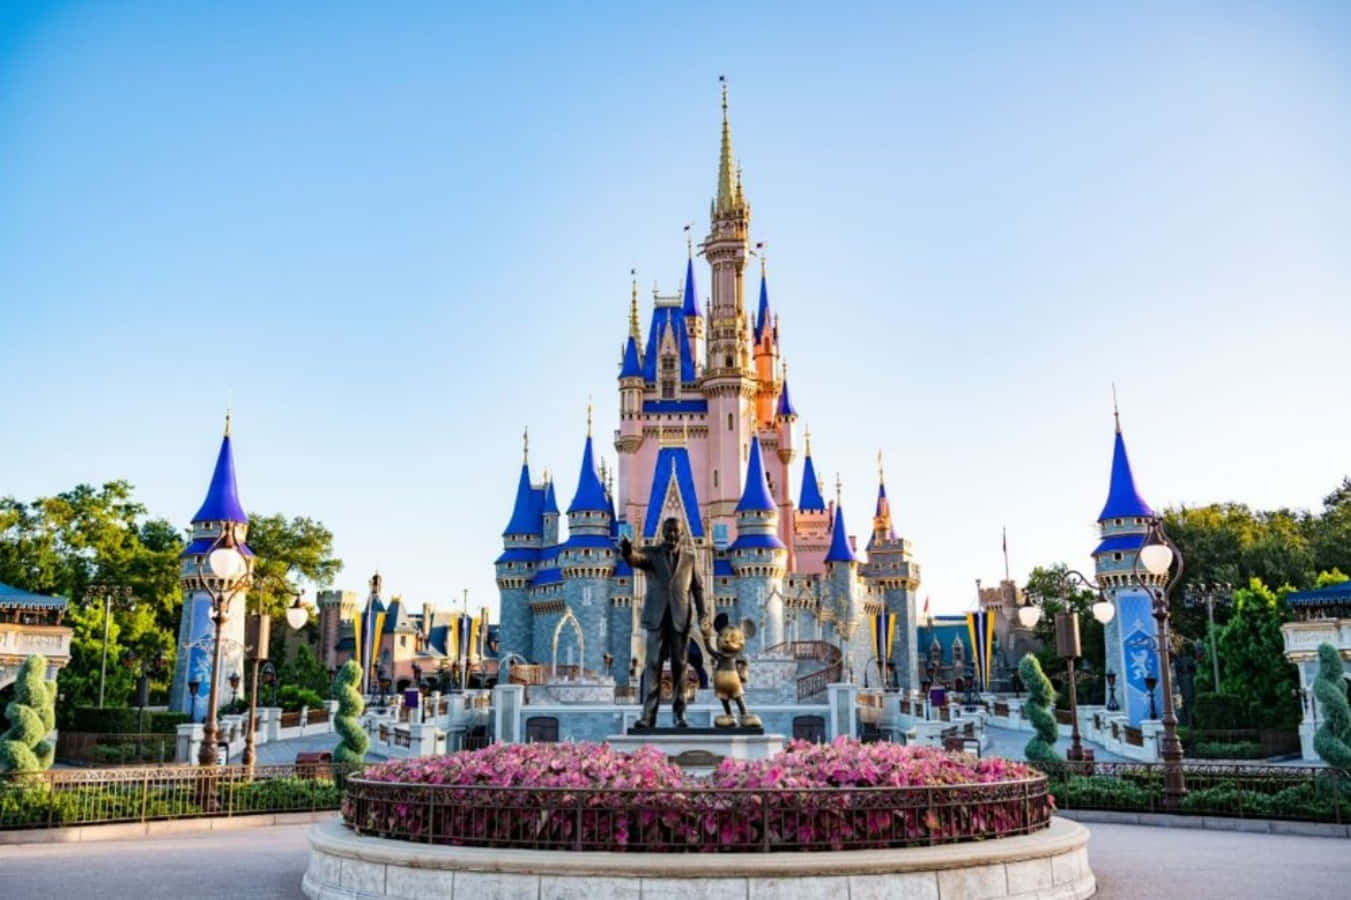 Cinderellaschloss In Disney World